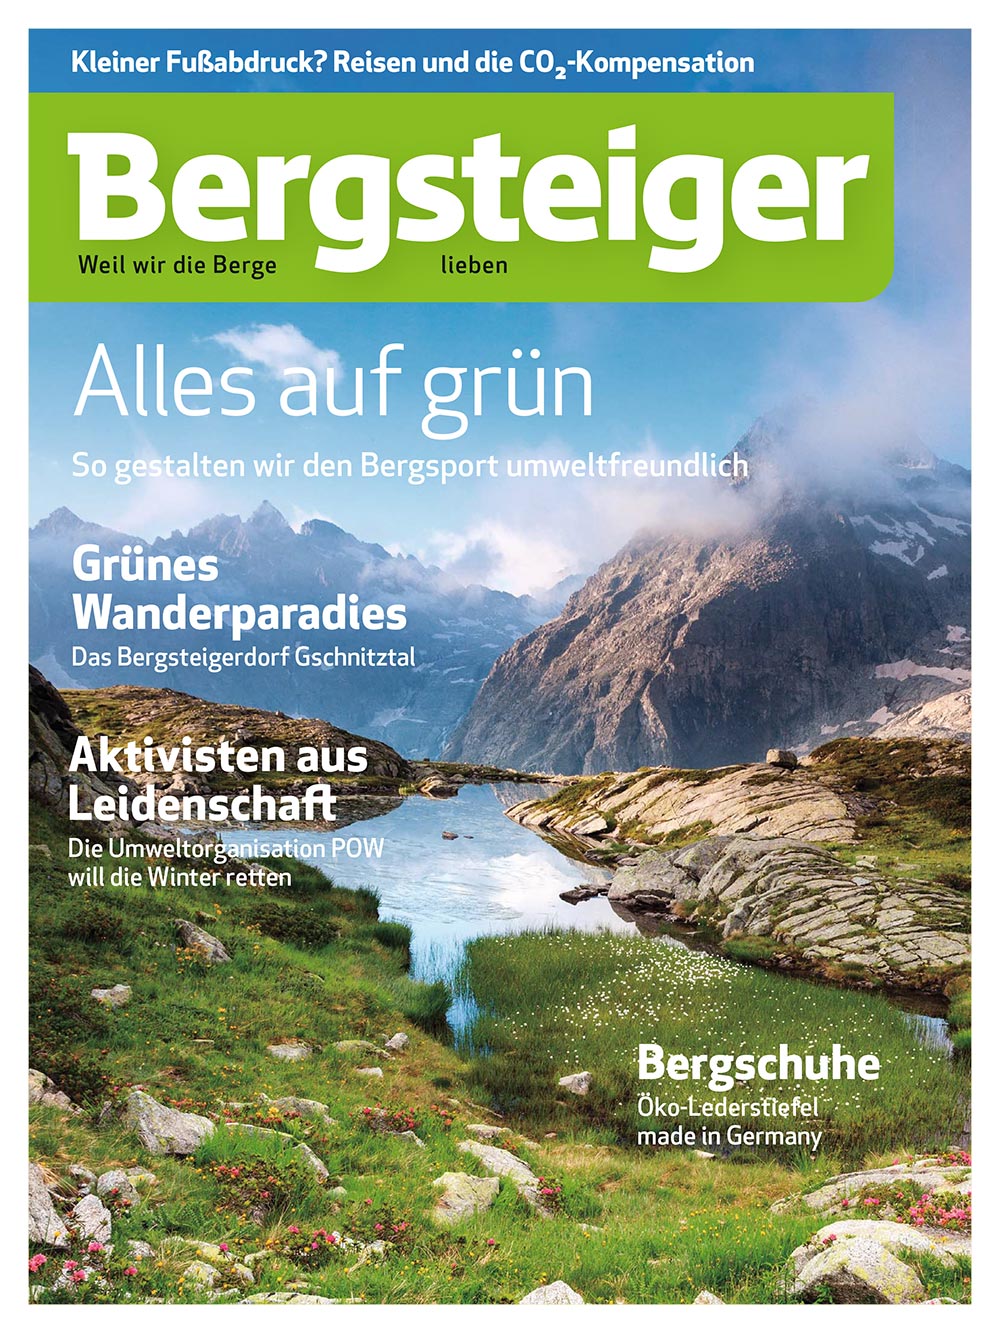 "Alles auf grün" im Bergsteiger Magazin